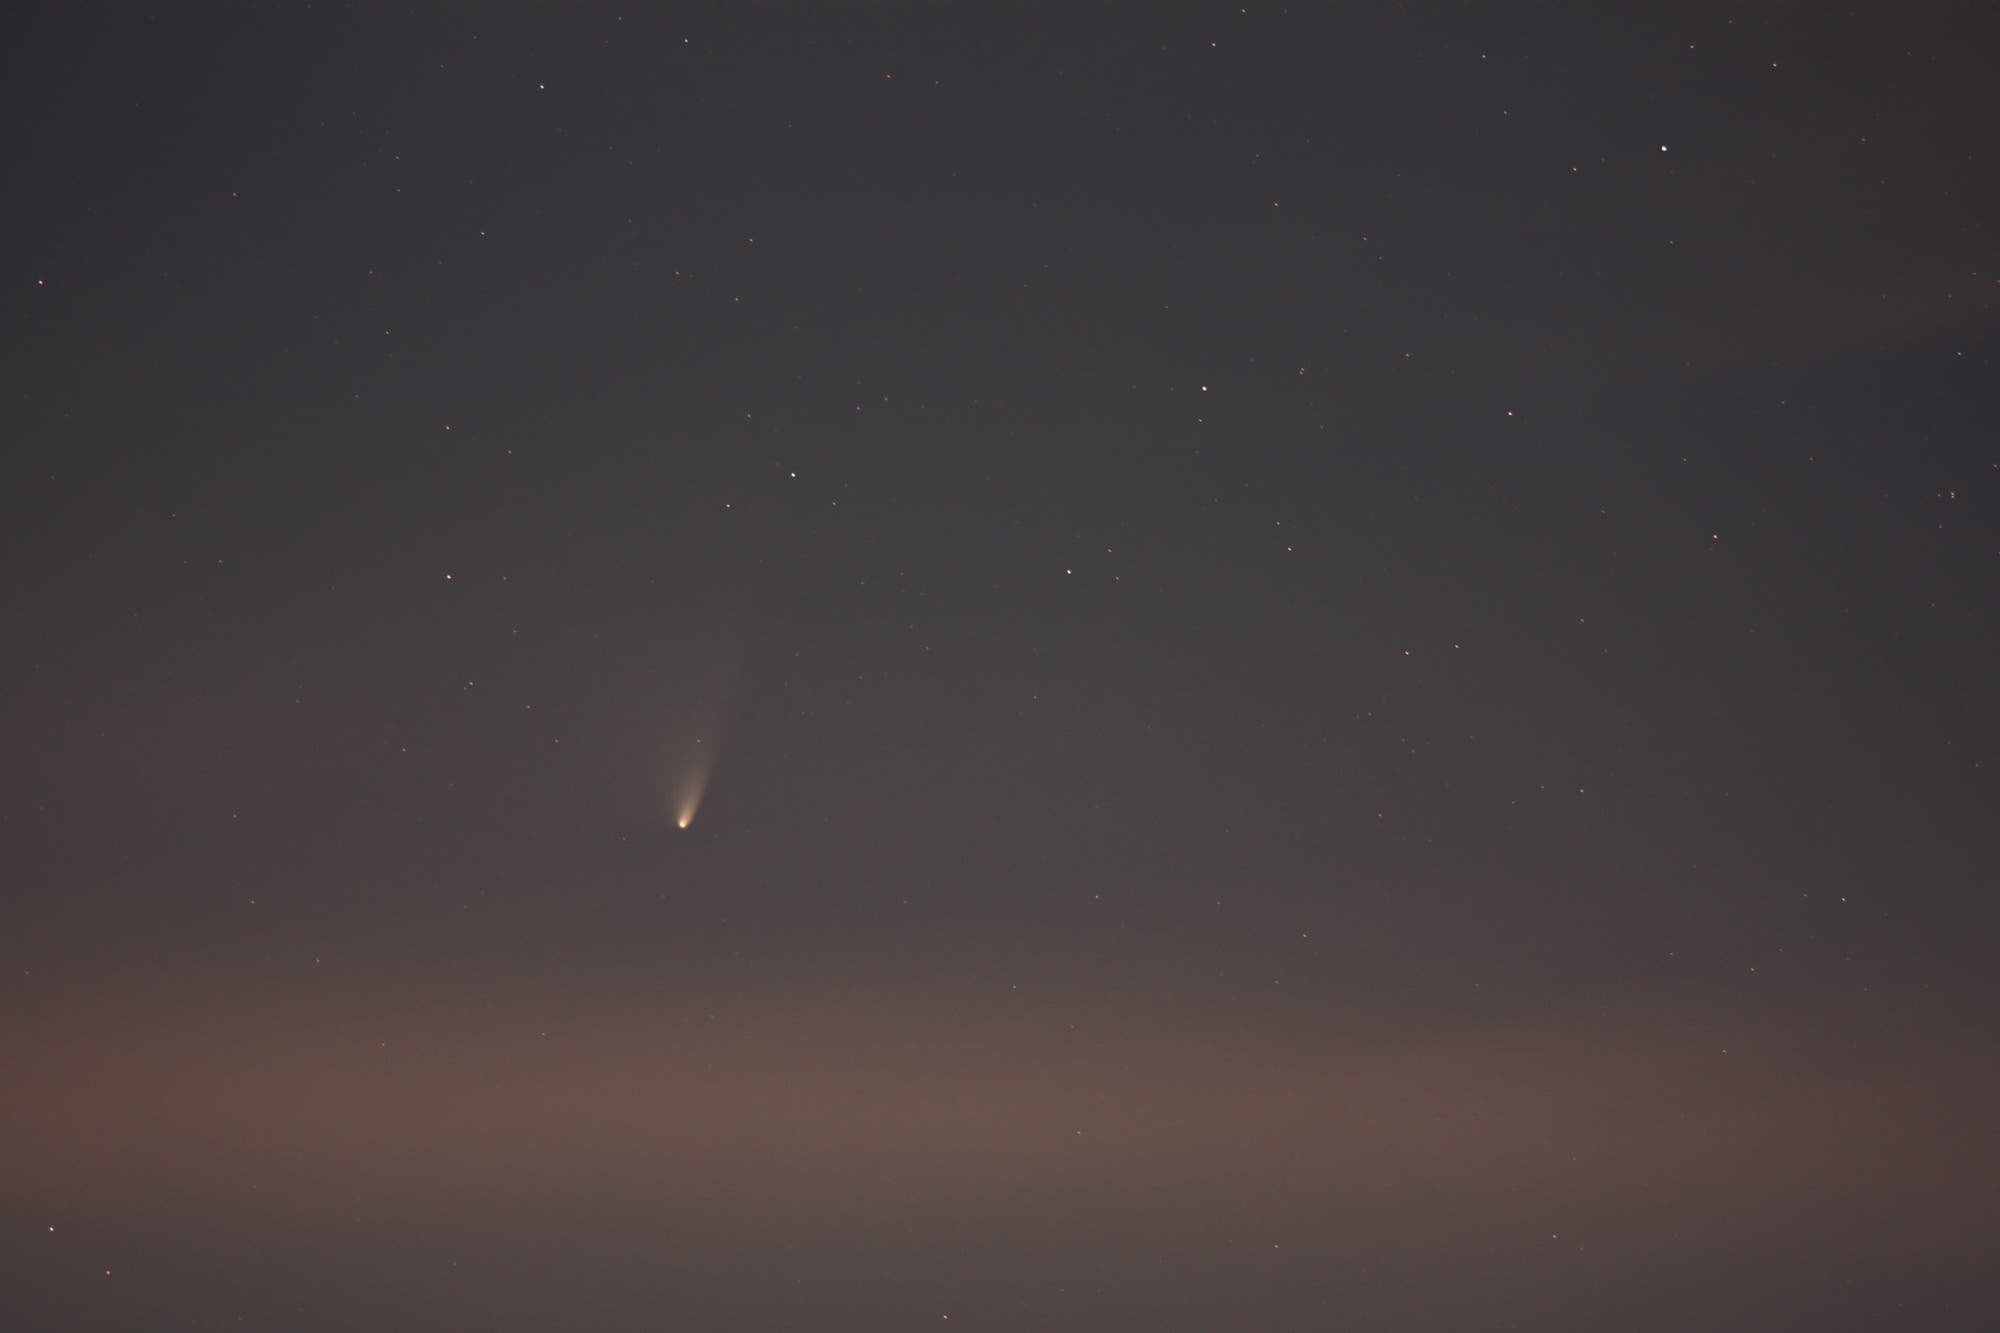 Komet PANSTARRS am 24. März 2013